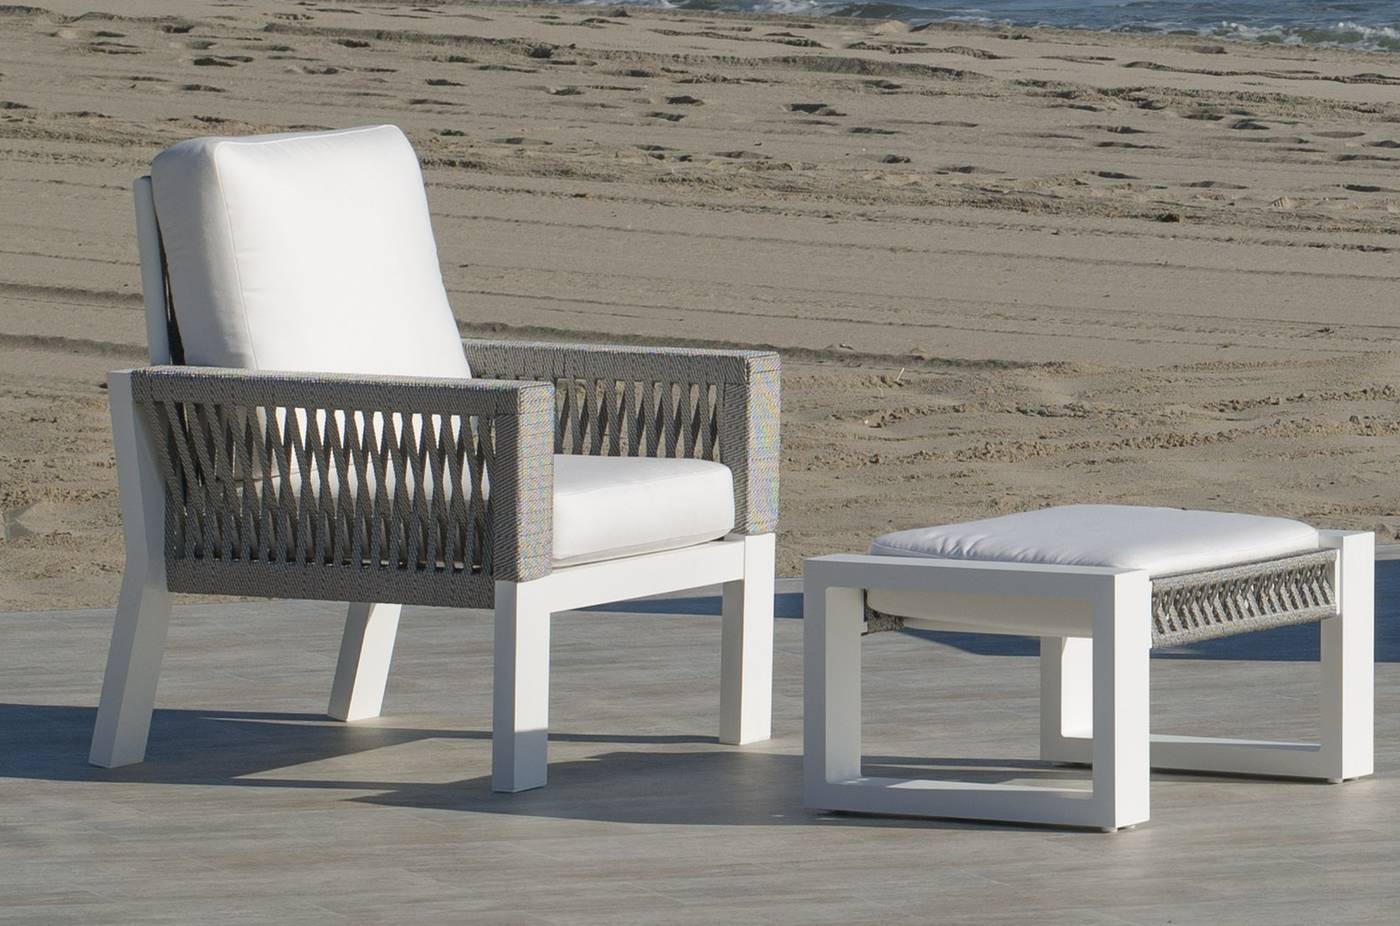 Set Aluminio Estambul-7 - Conjunto aluminio-cuerda: 1 sofá de 2 plazas + 2 sillones + 1 mesa de centro + cojines. Disponible en color blanco, gris, marrón o champagne.